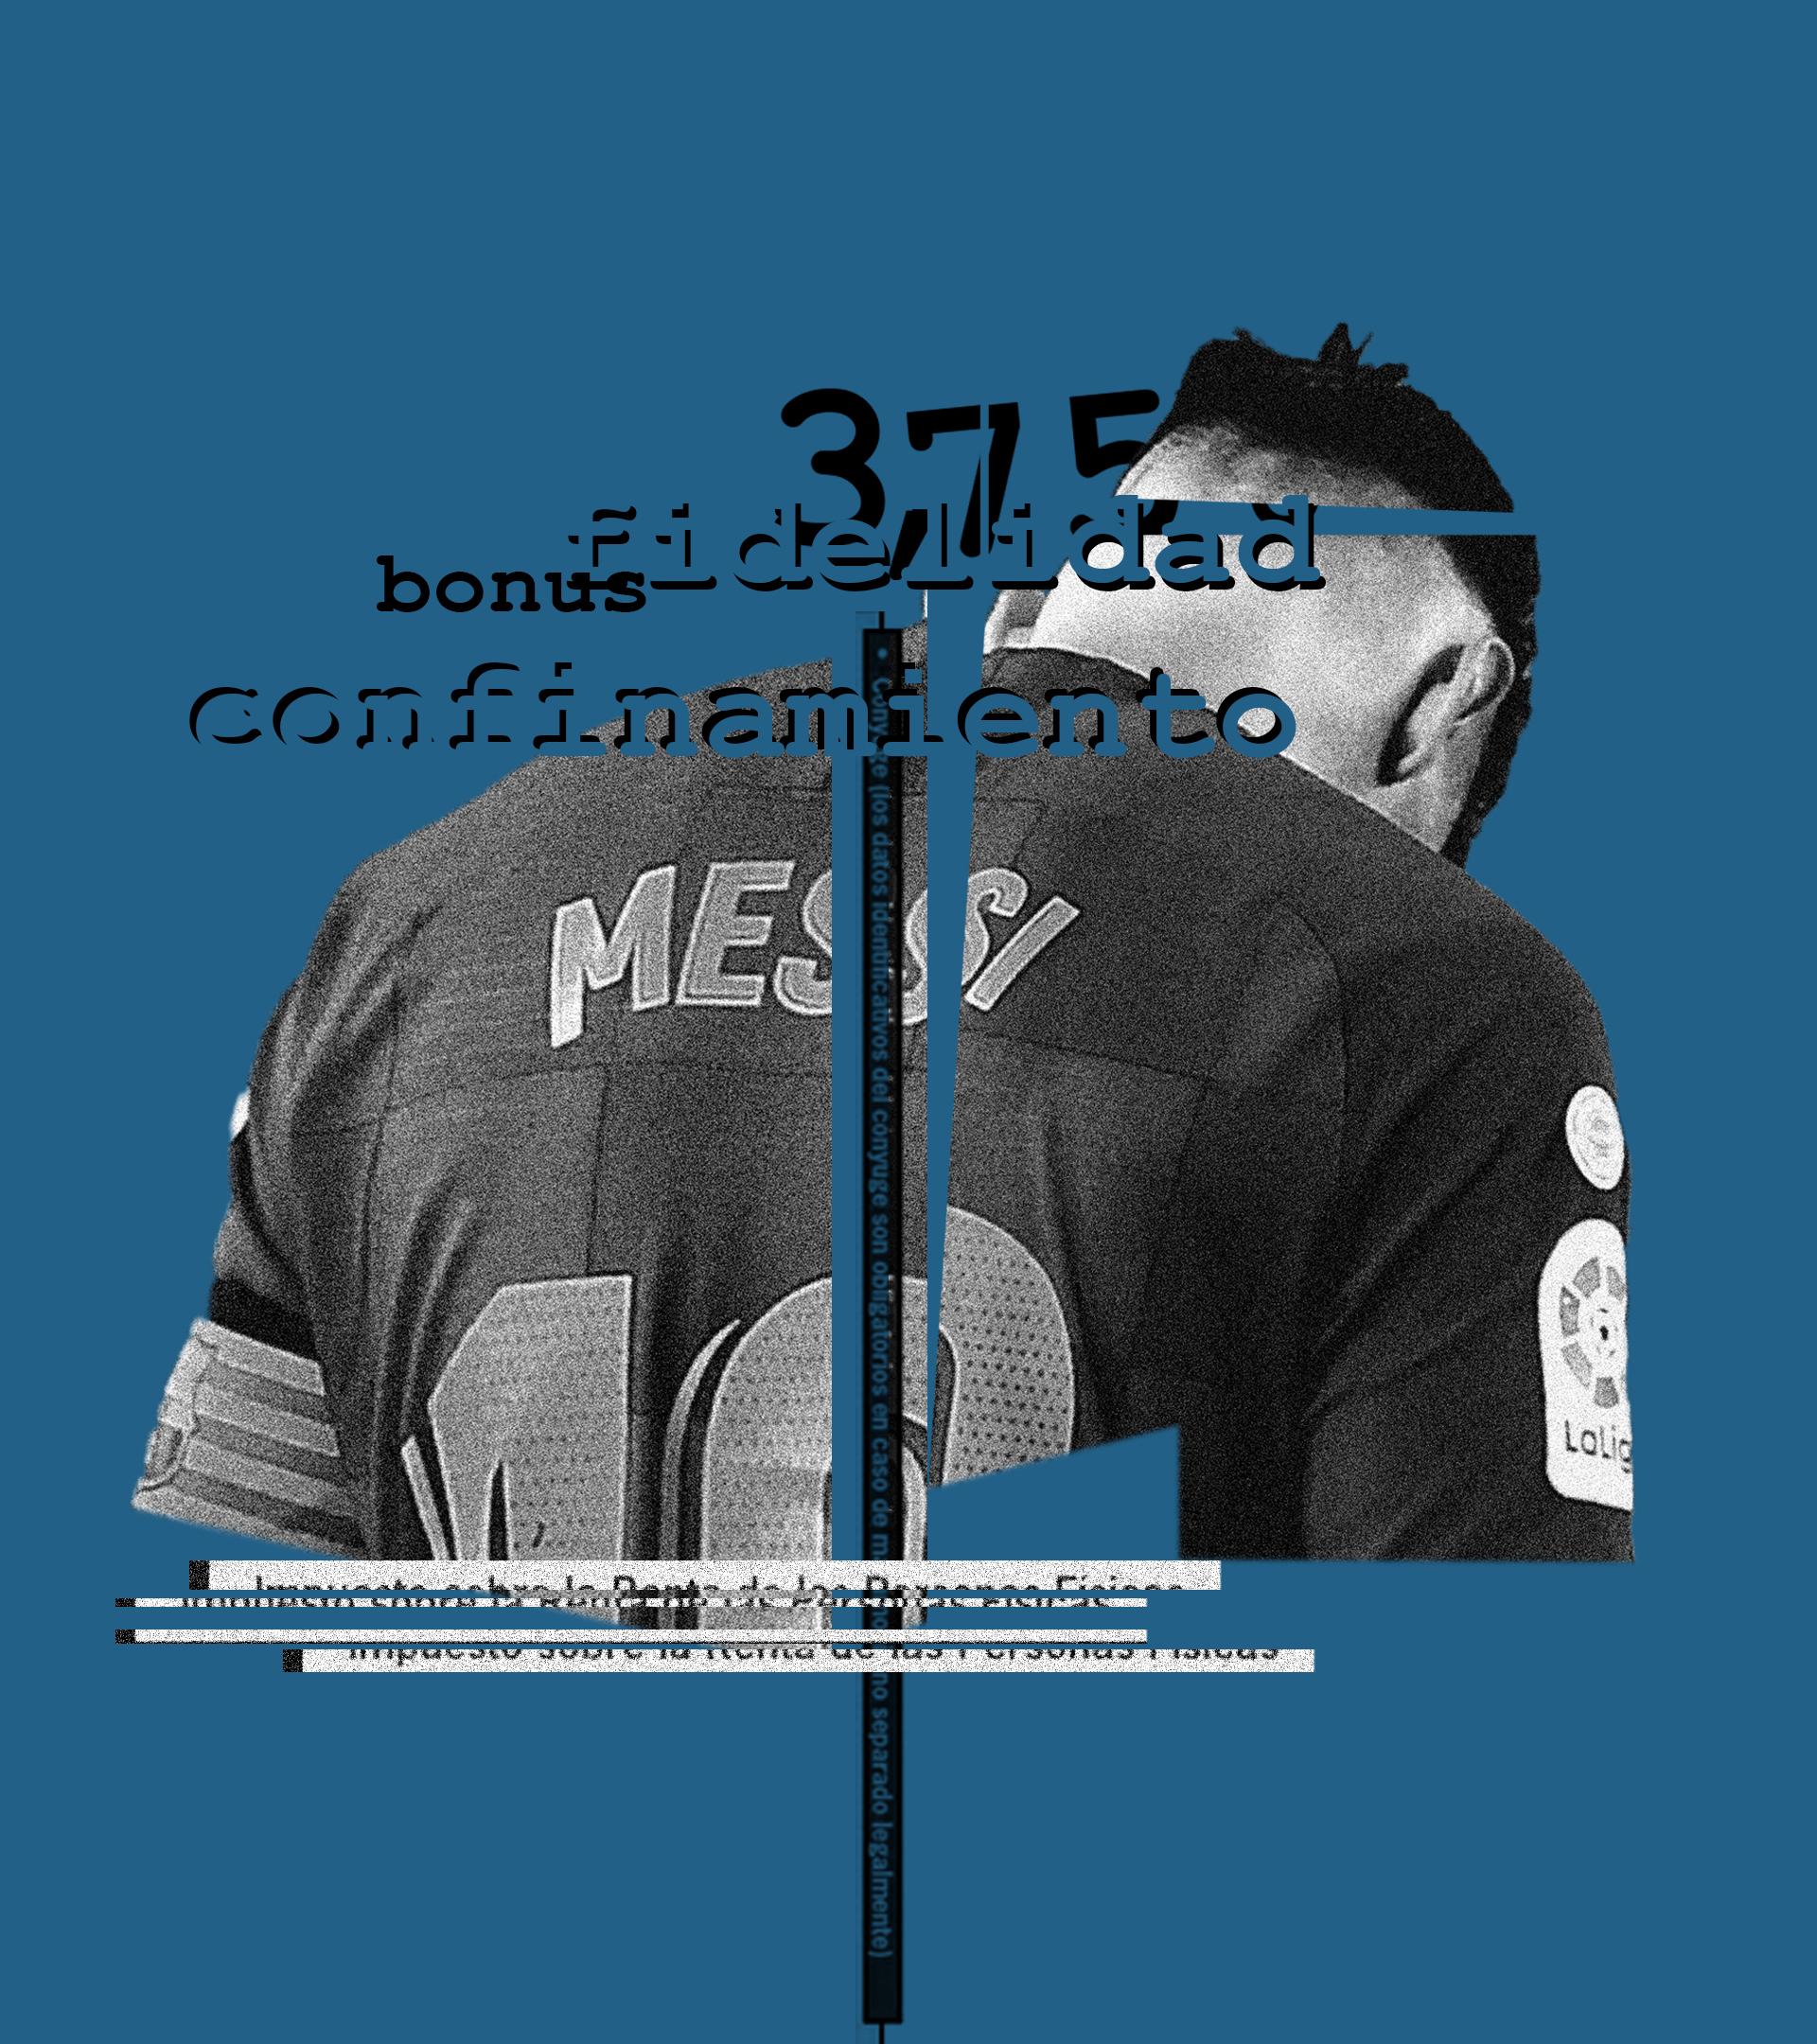 Messi impuso en plena pandemia un interés del 3,75% por aplazar su bonus de fidelidad y un 20% si no le pagaban en octubre